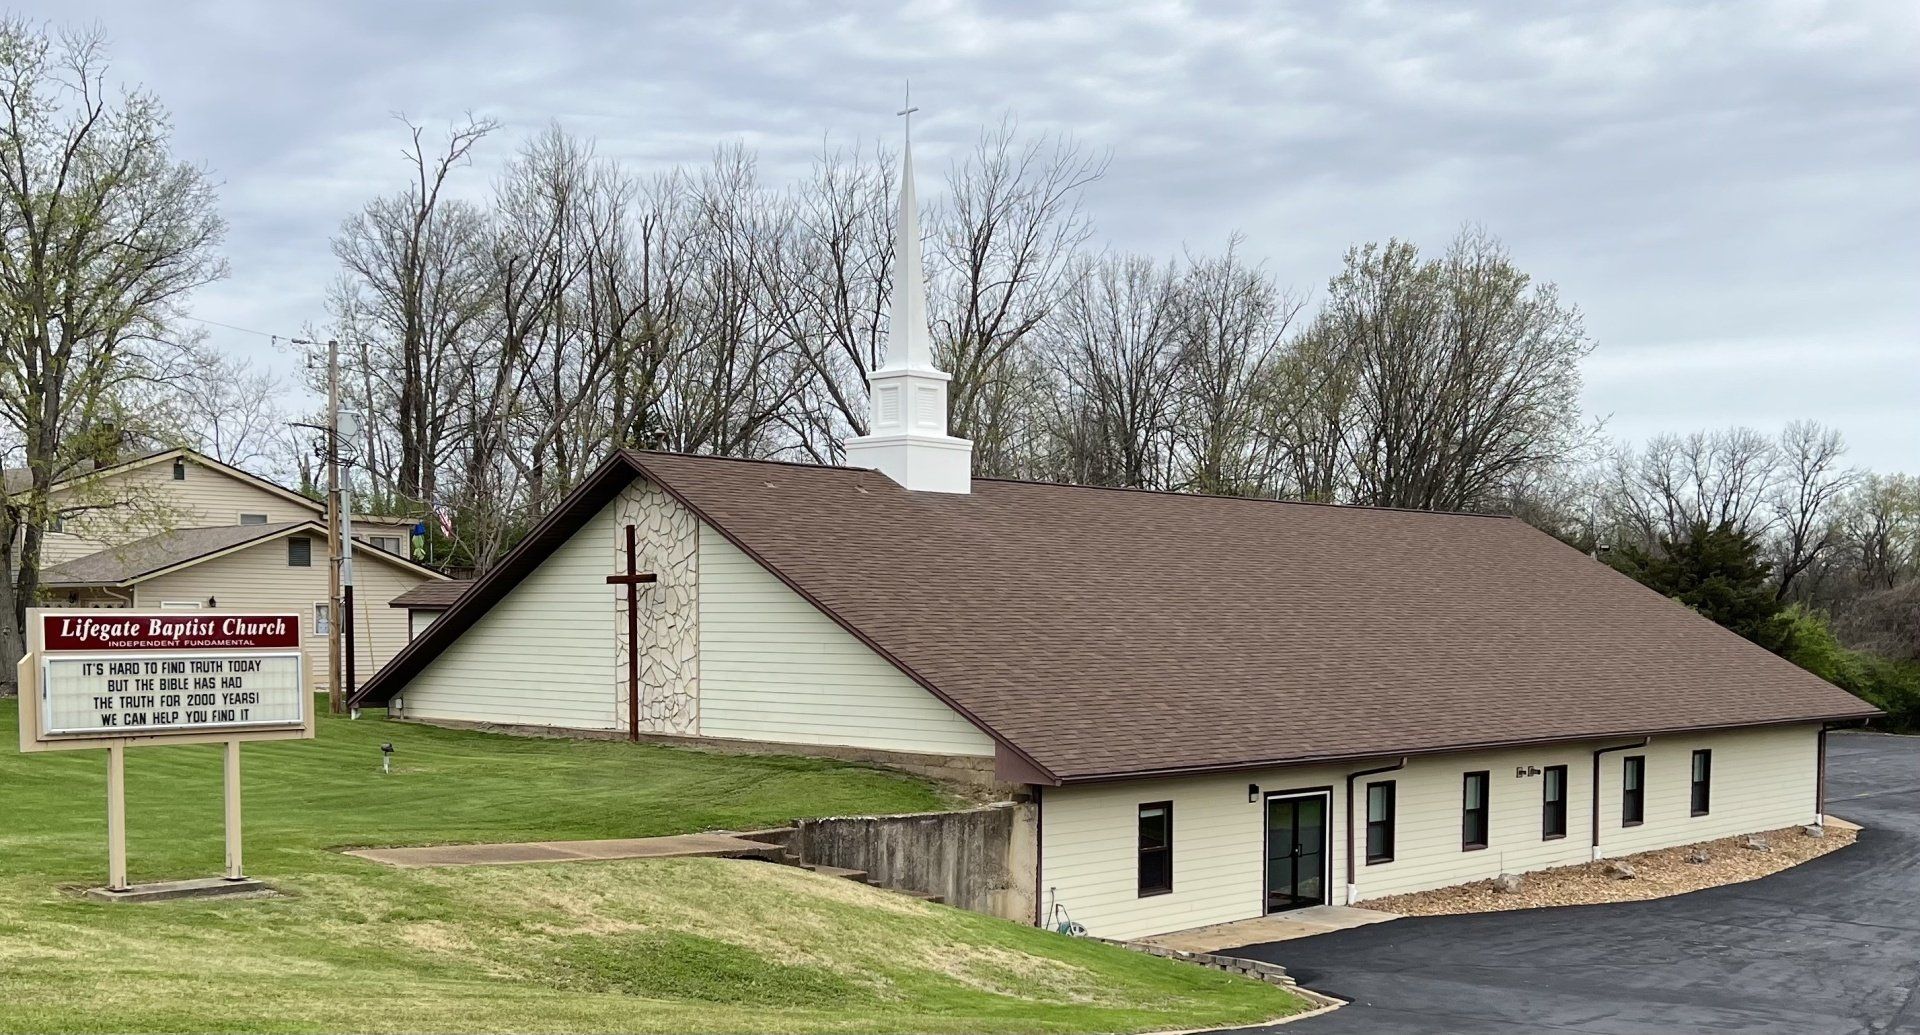 Lifegate Baptist Church in Wildwood, MO